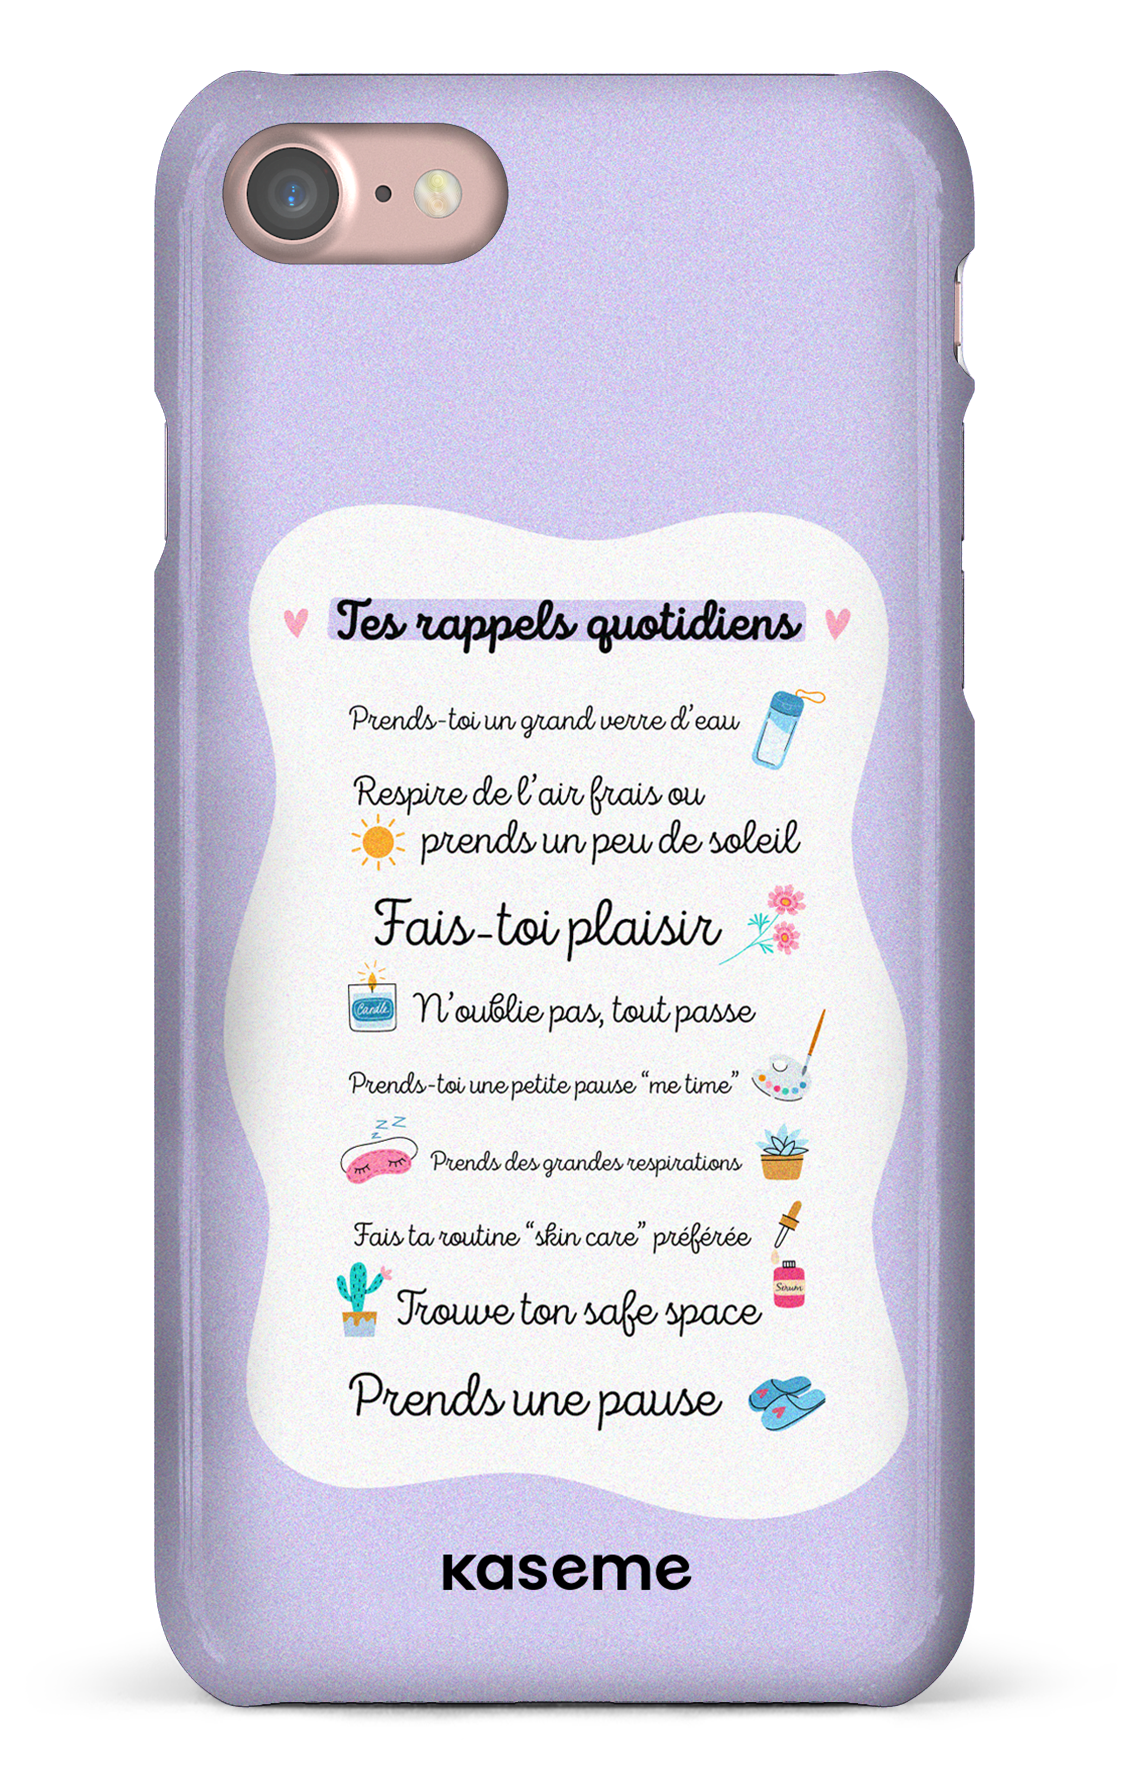 Tes rappels quotidiens purple - iPhone SE 2020 / 2022